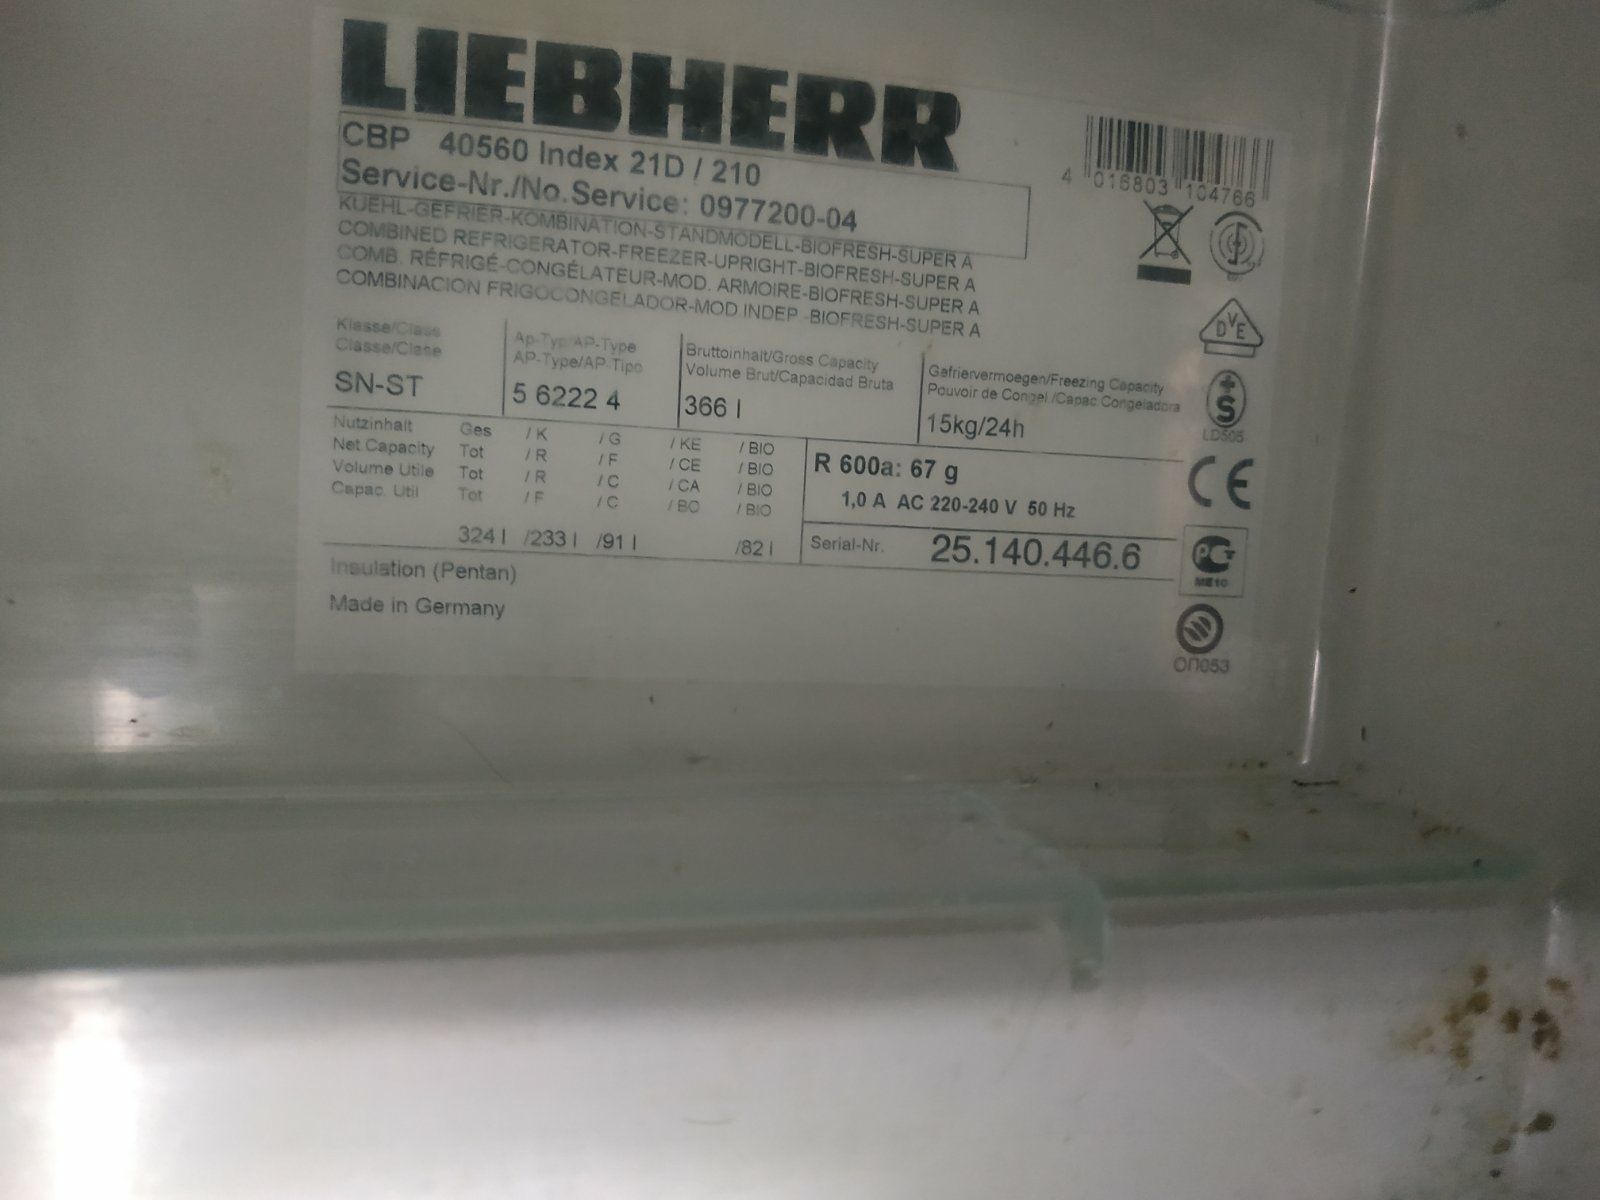 Liebherr CBP 40560 Premium BioFresh